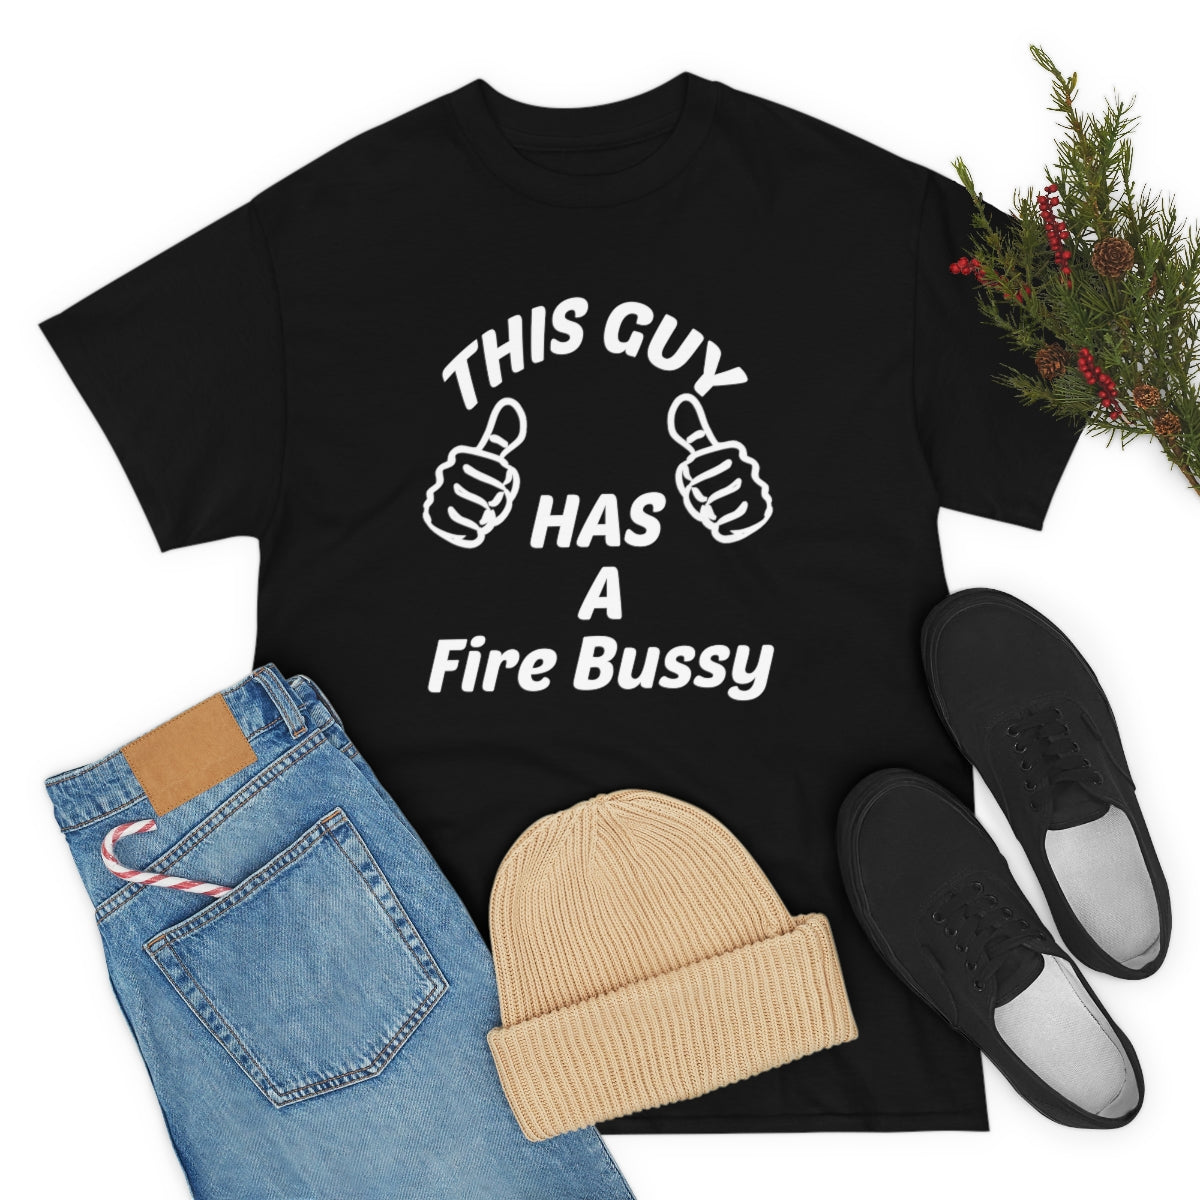 FIRE BUSSY T-SHIRT